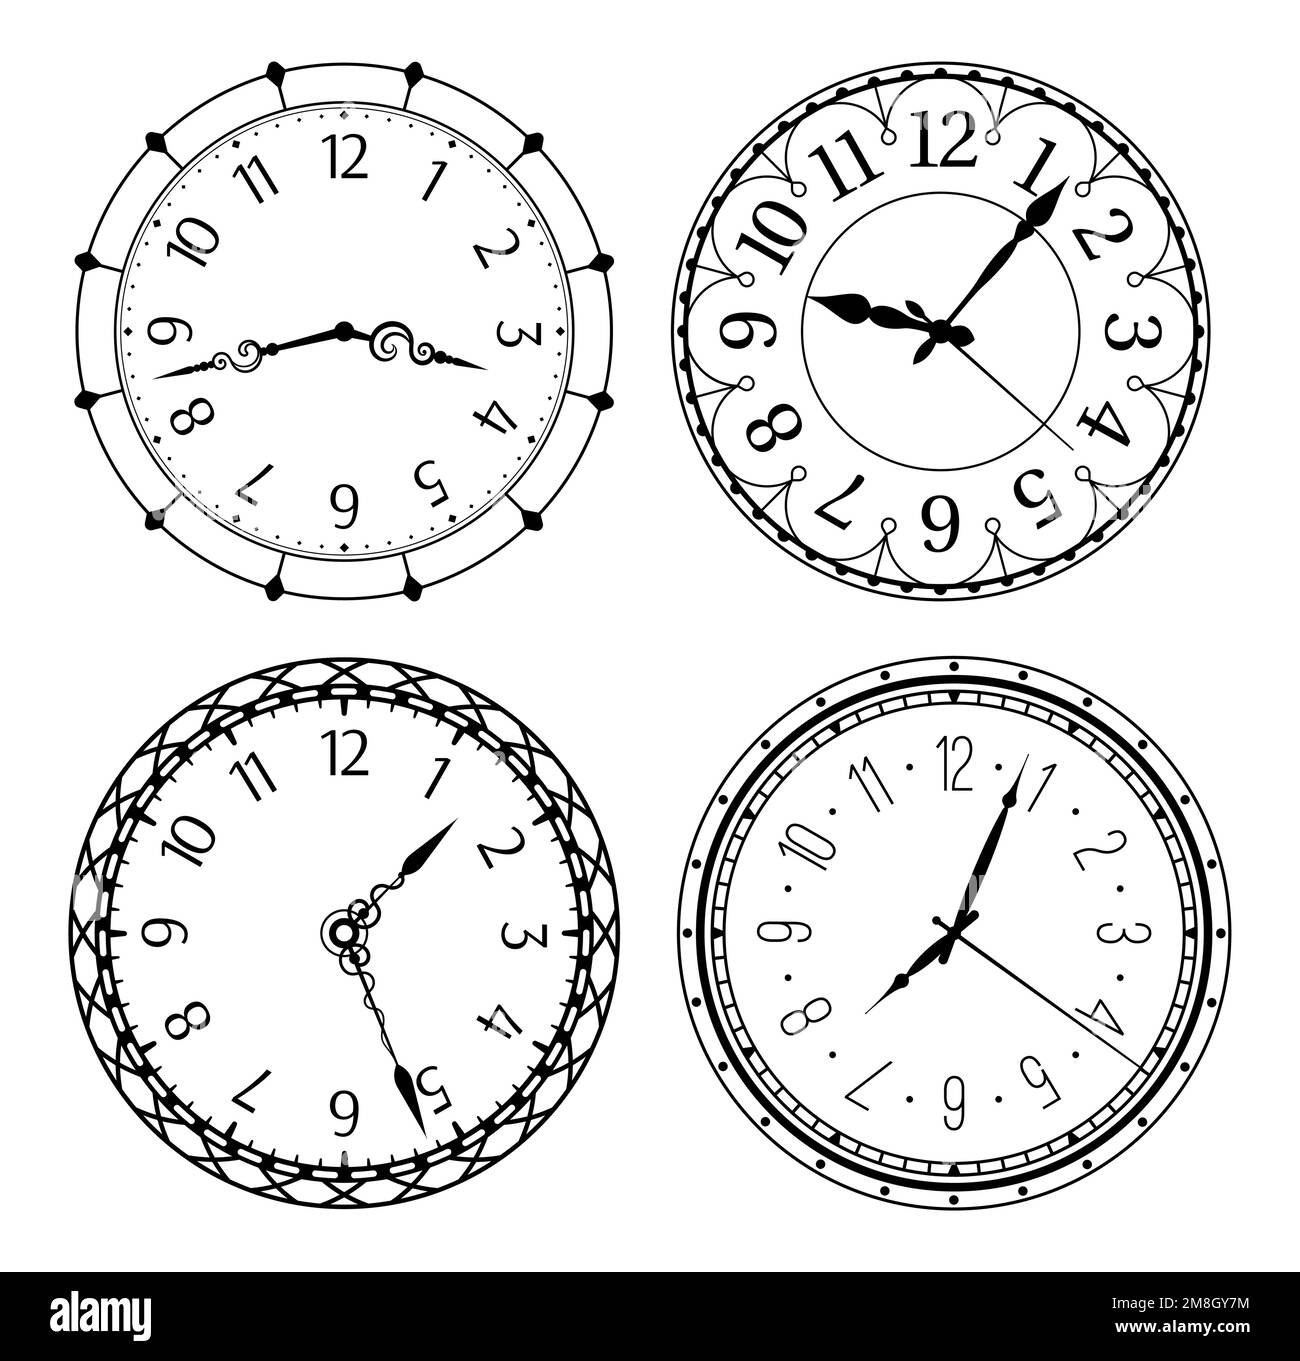 Horloges anciennes avec chiffres arabes. Modèles ronds classiques et vintage avec jeu de vecteurs à chiffres et mains isolées Illustration de Vecteur